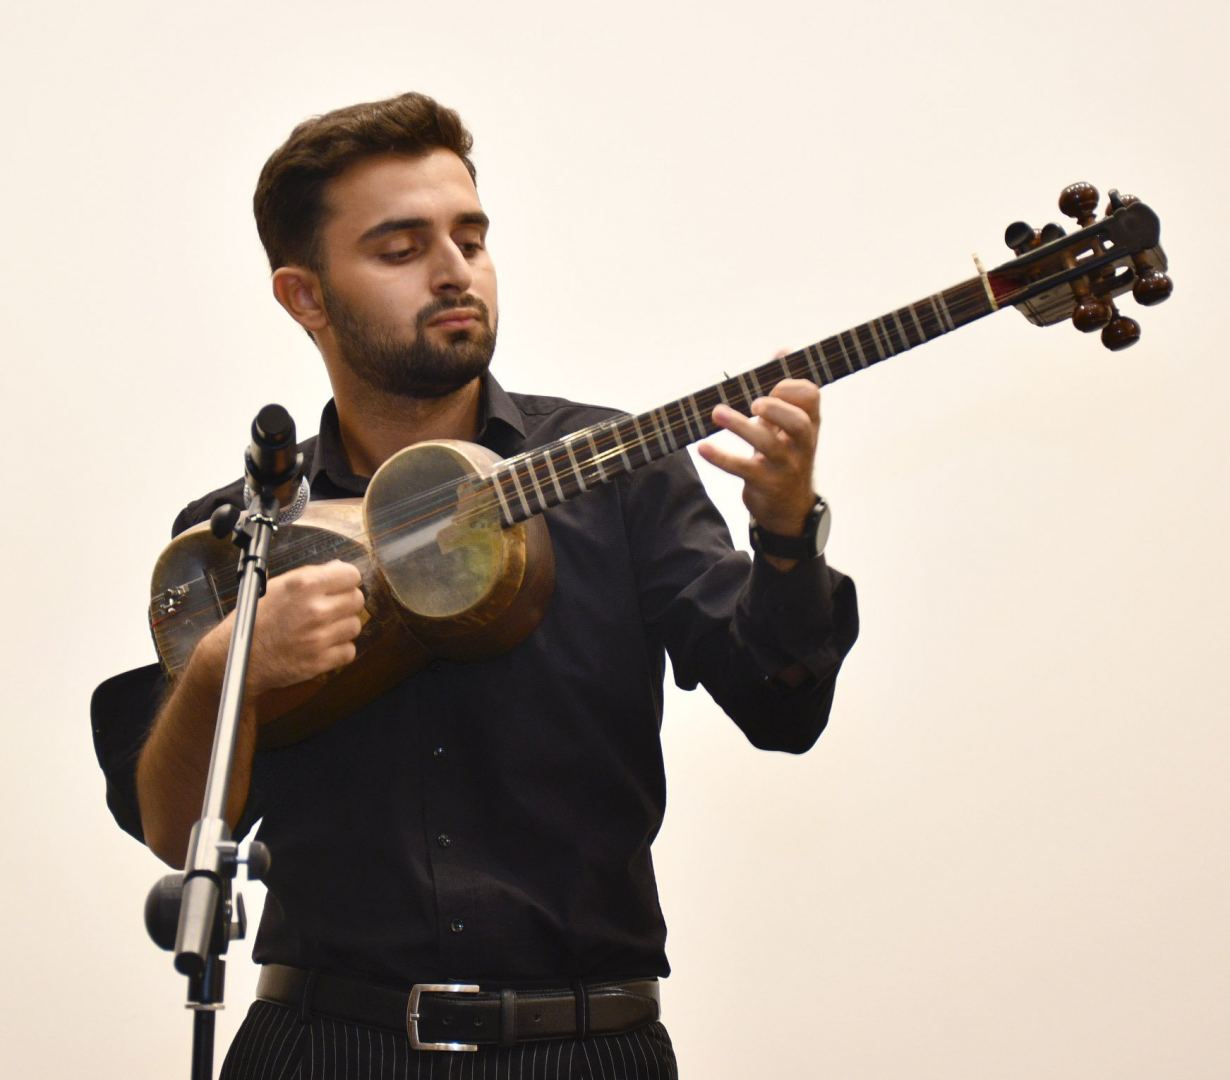 Международный день благотворительности в Баку отметили концертом "Музыка добра" (ФОТО)